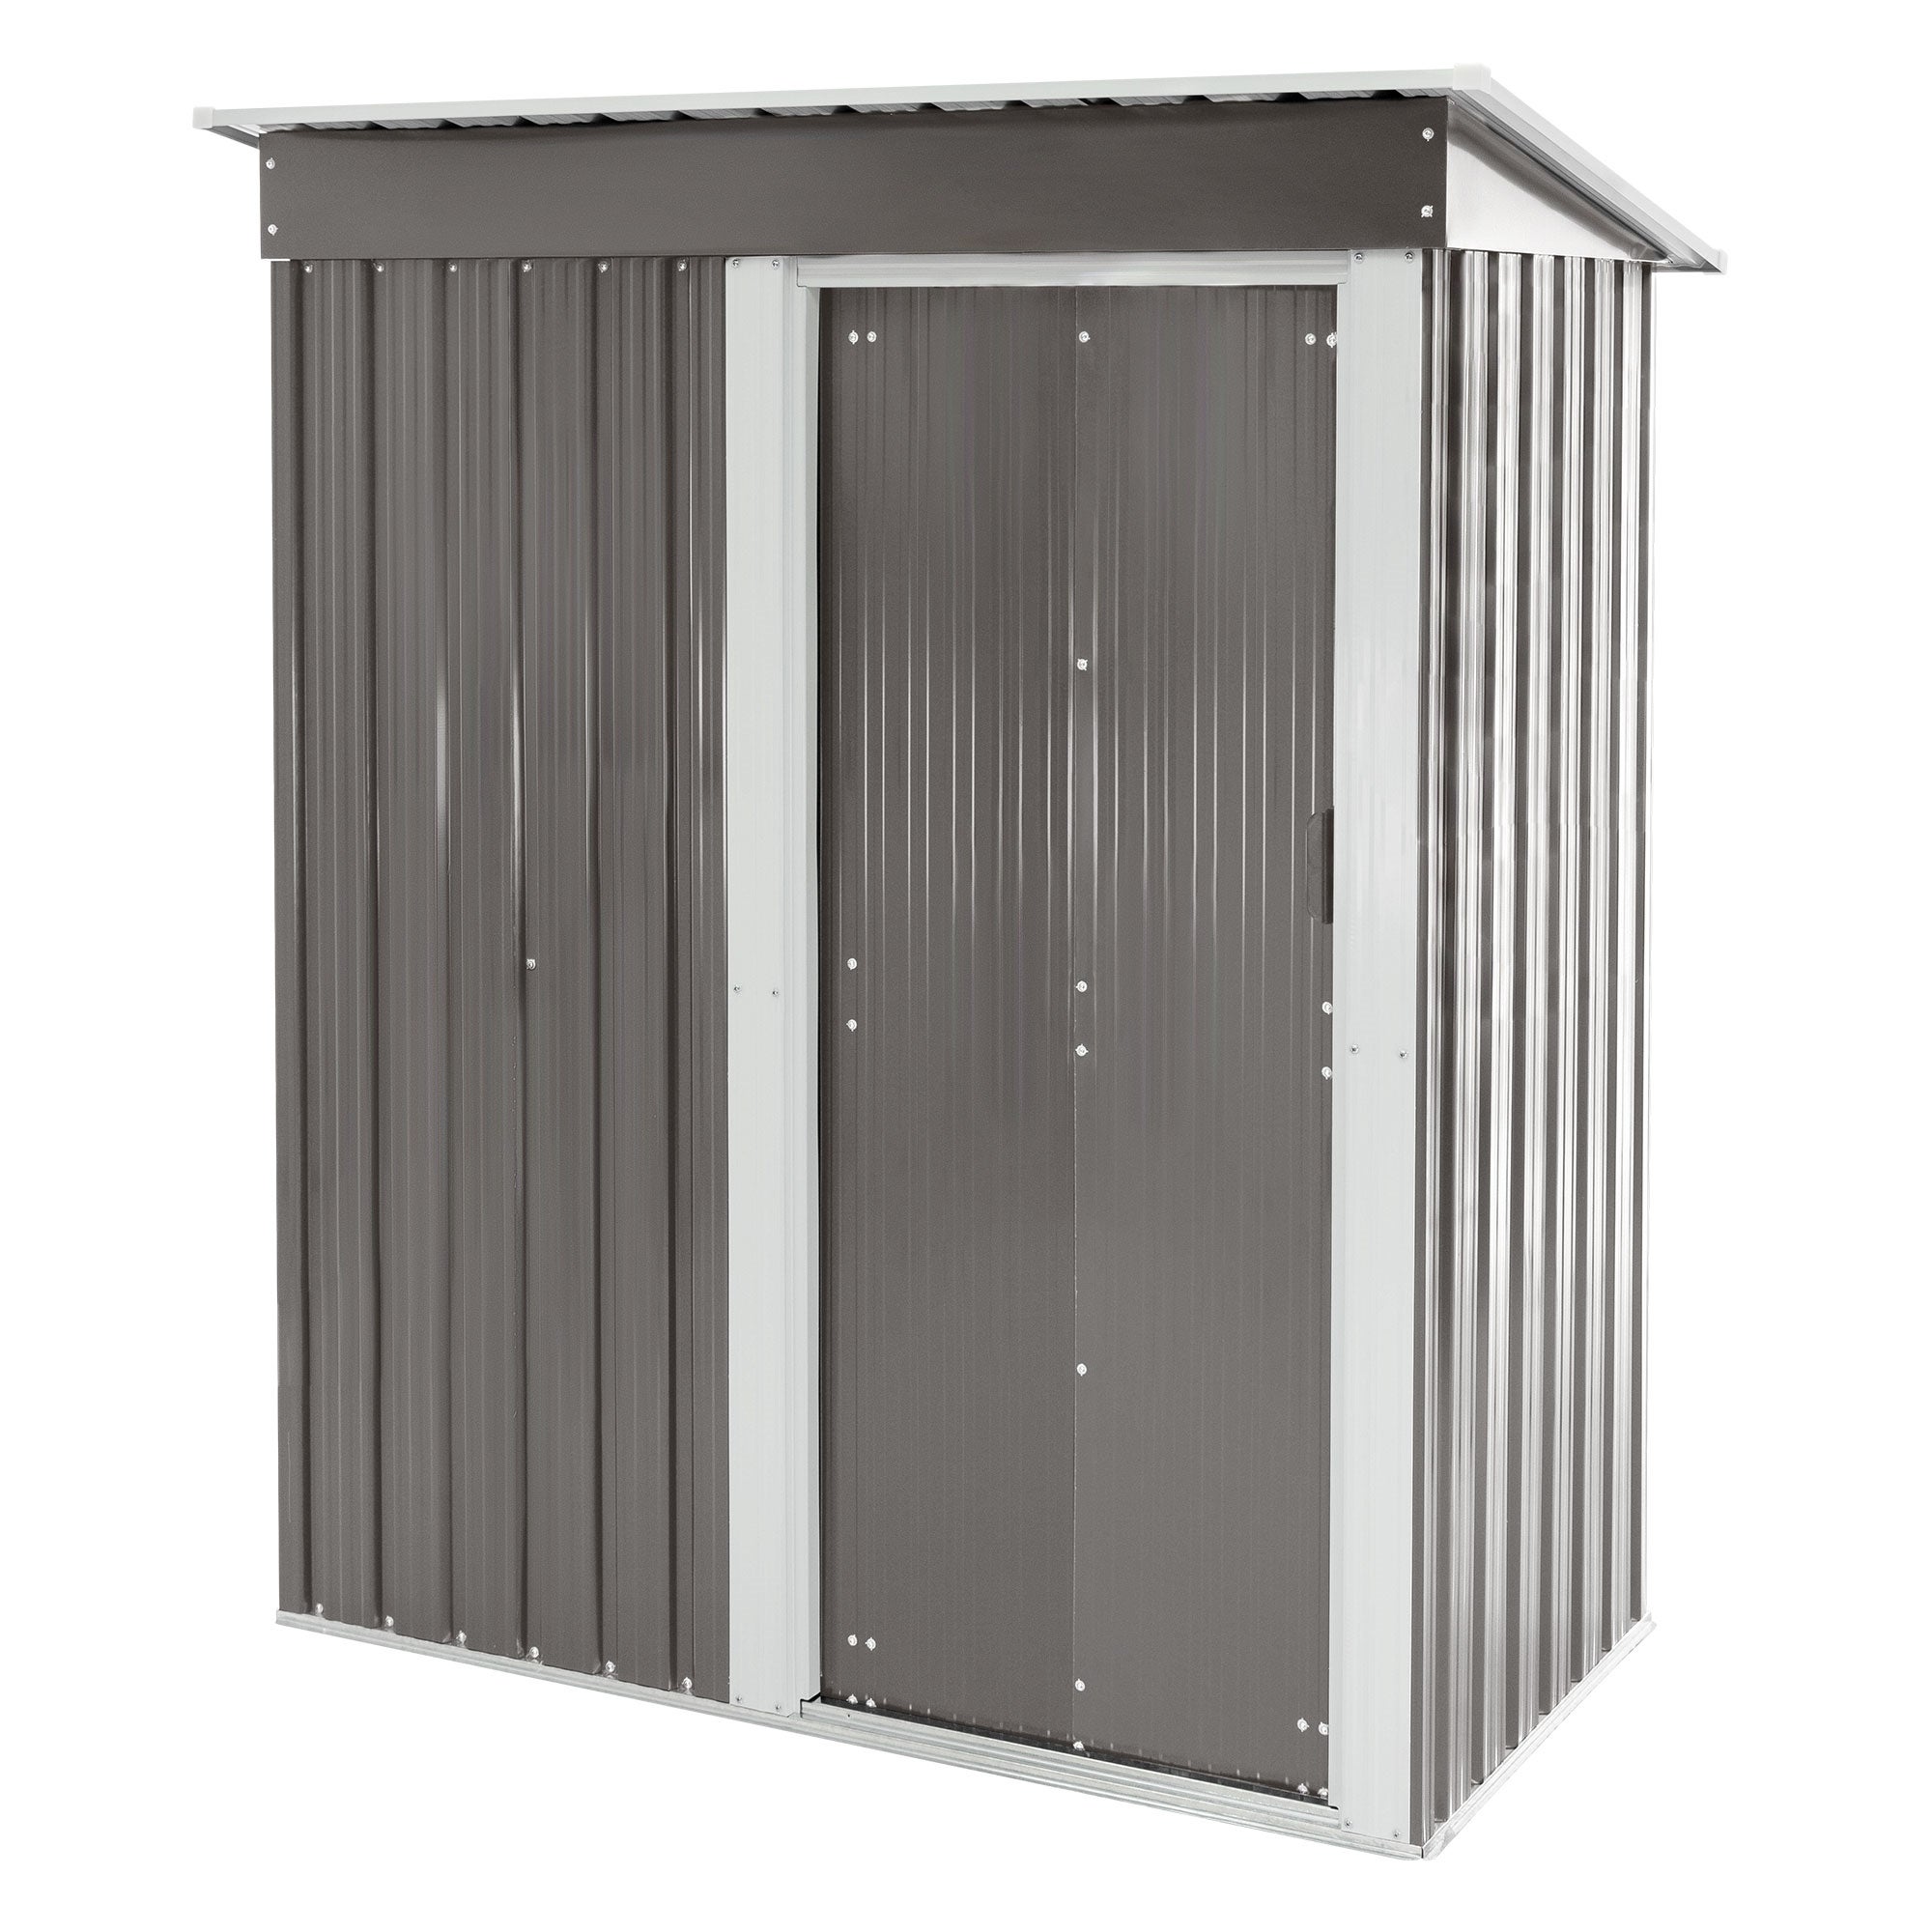 fondazione Box casetta metallo per giardino serra attrezzi capanno capannone 